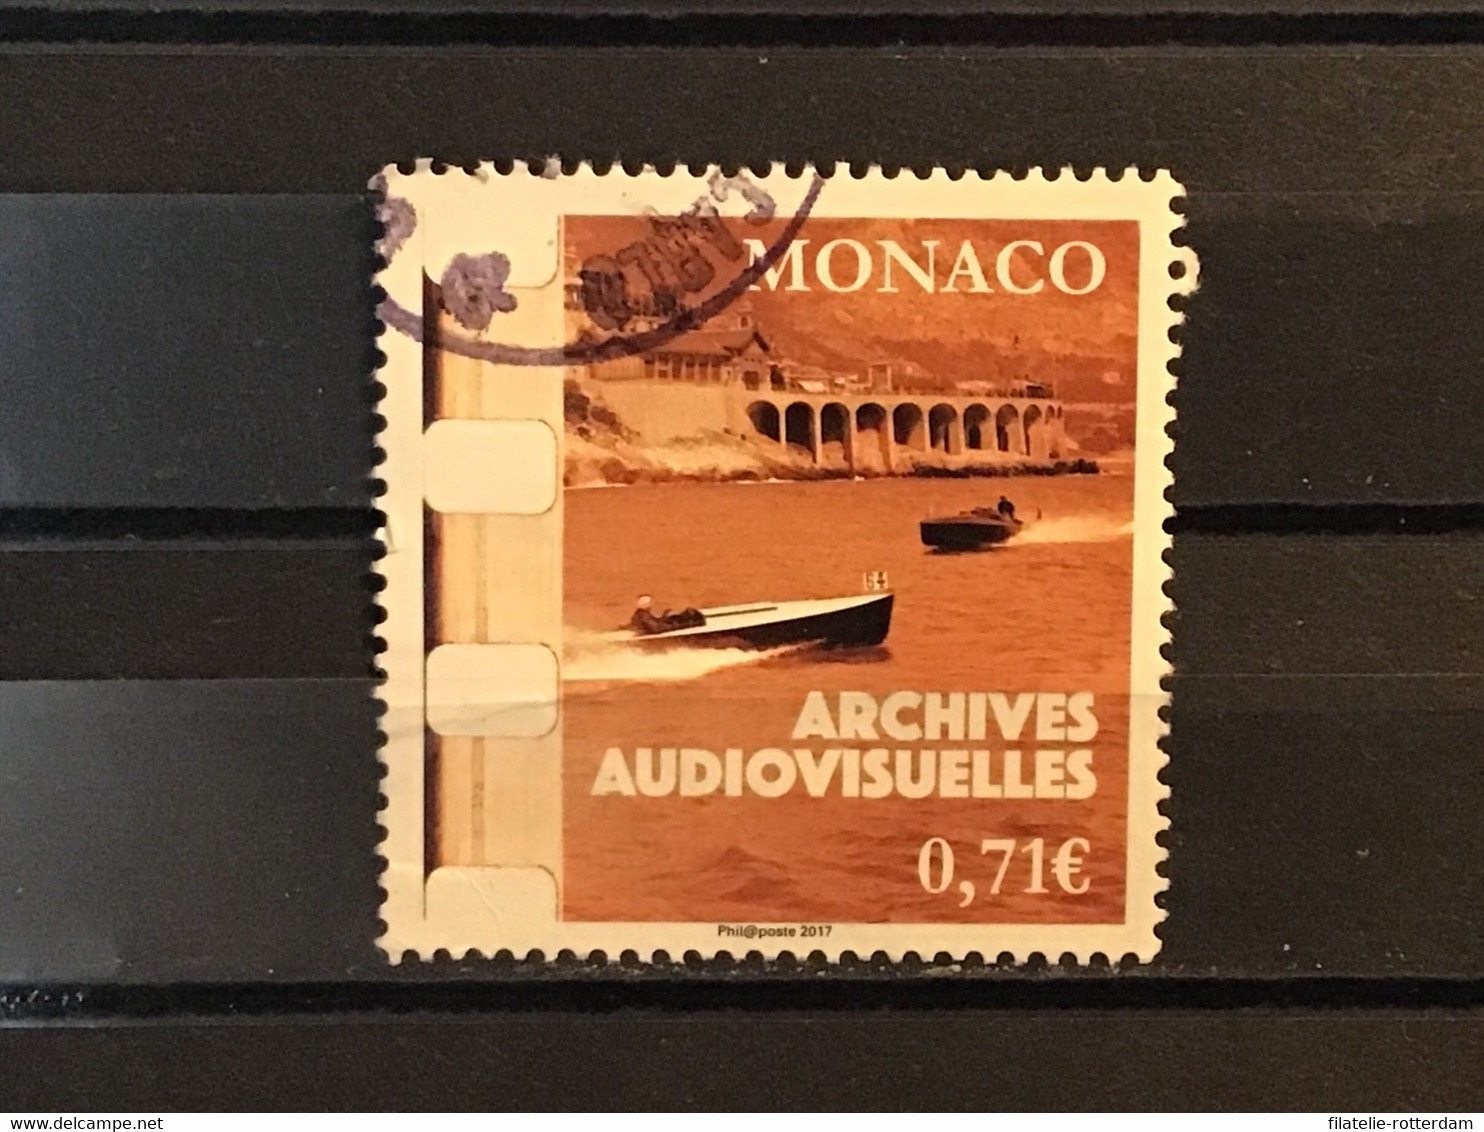 Monaco - Audiovisuele Archieven (0.71) 2017 - Oblitérés